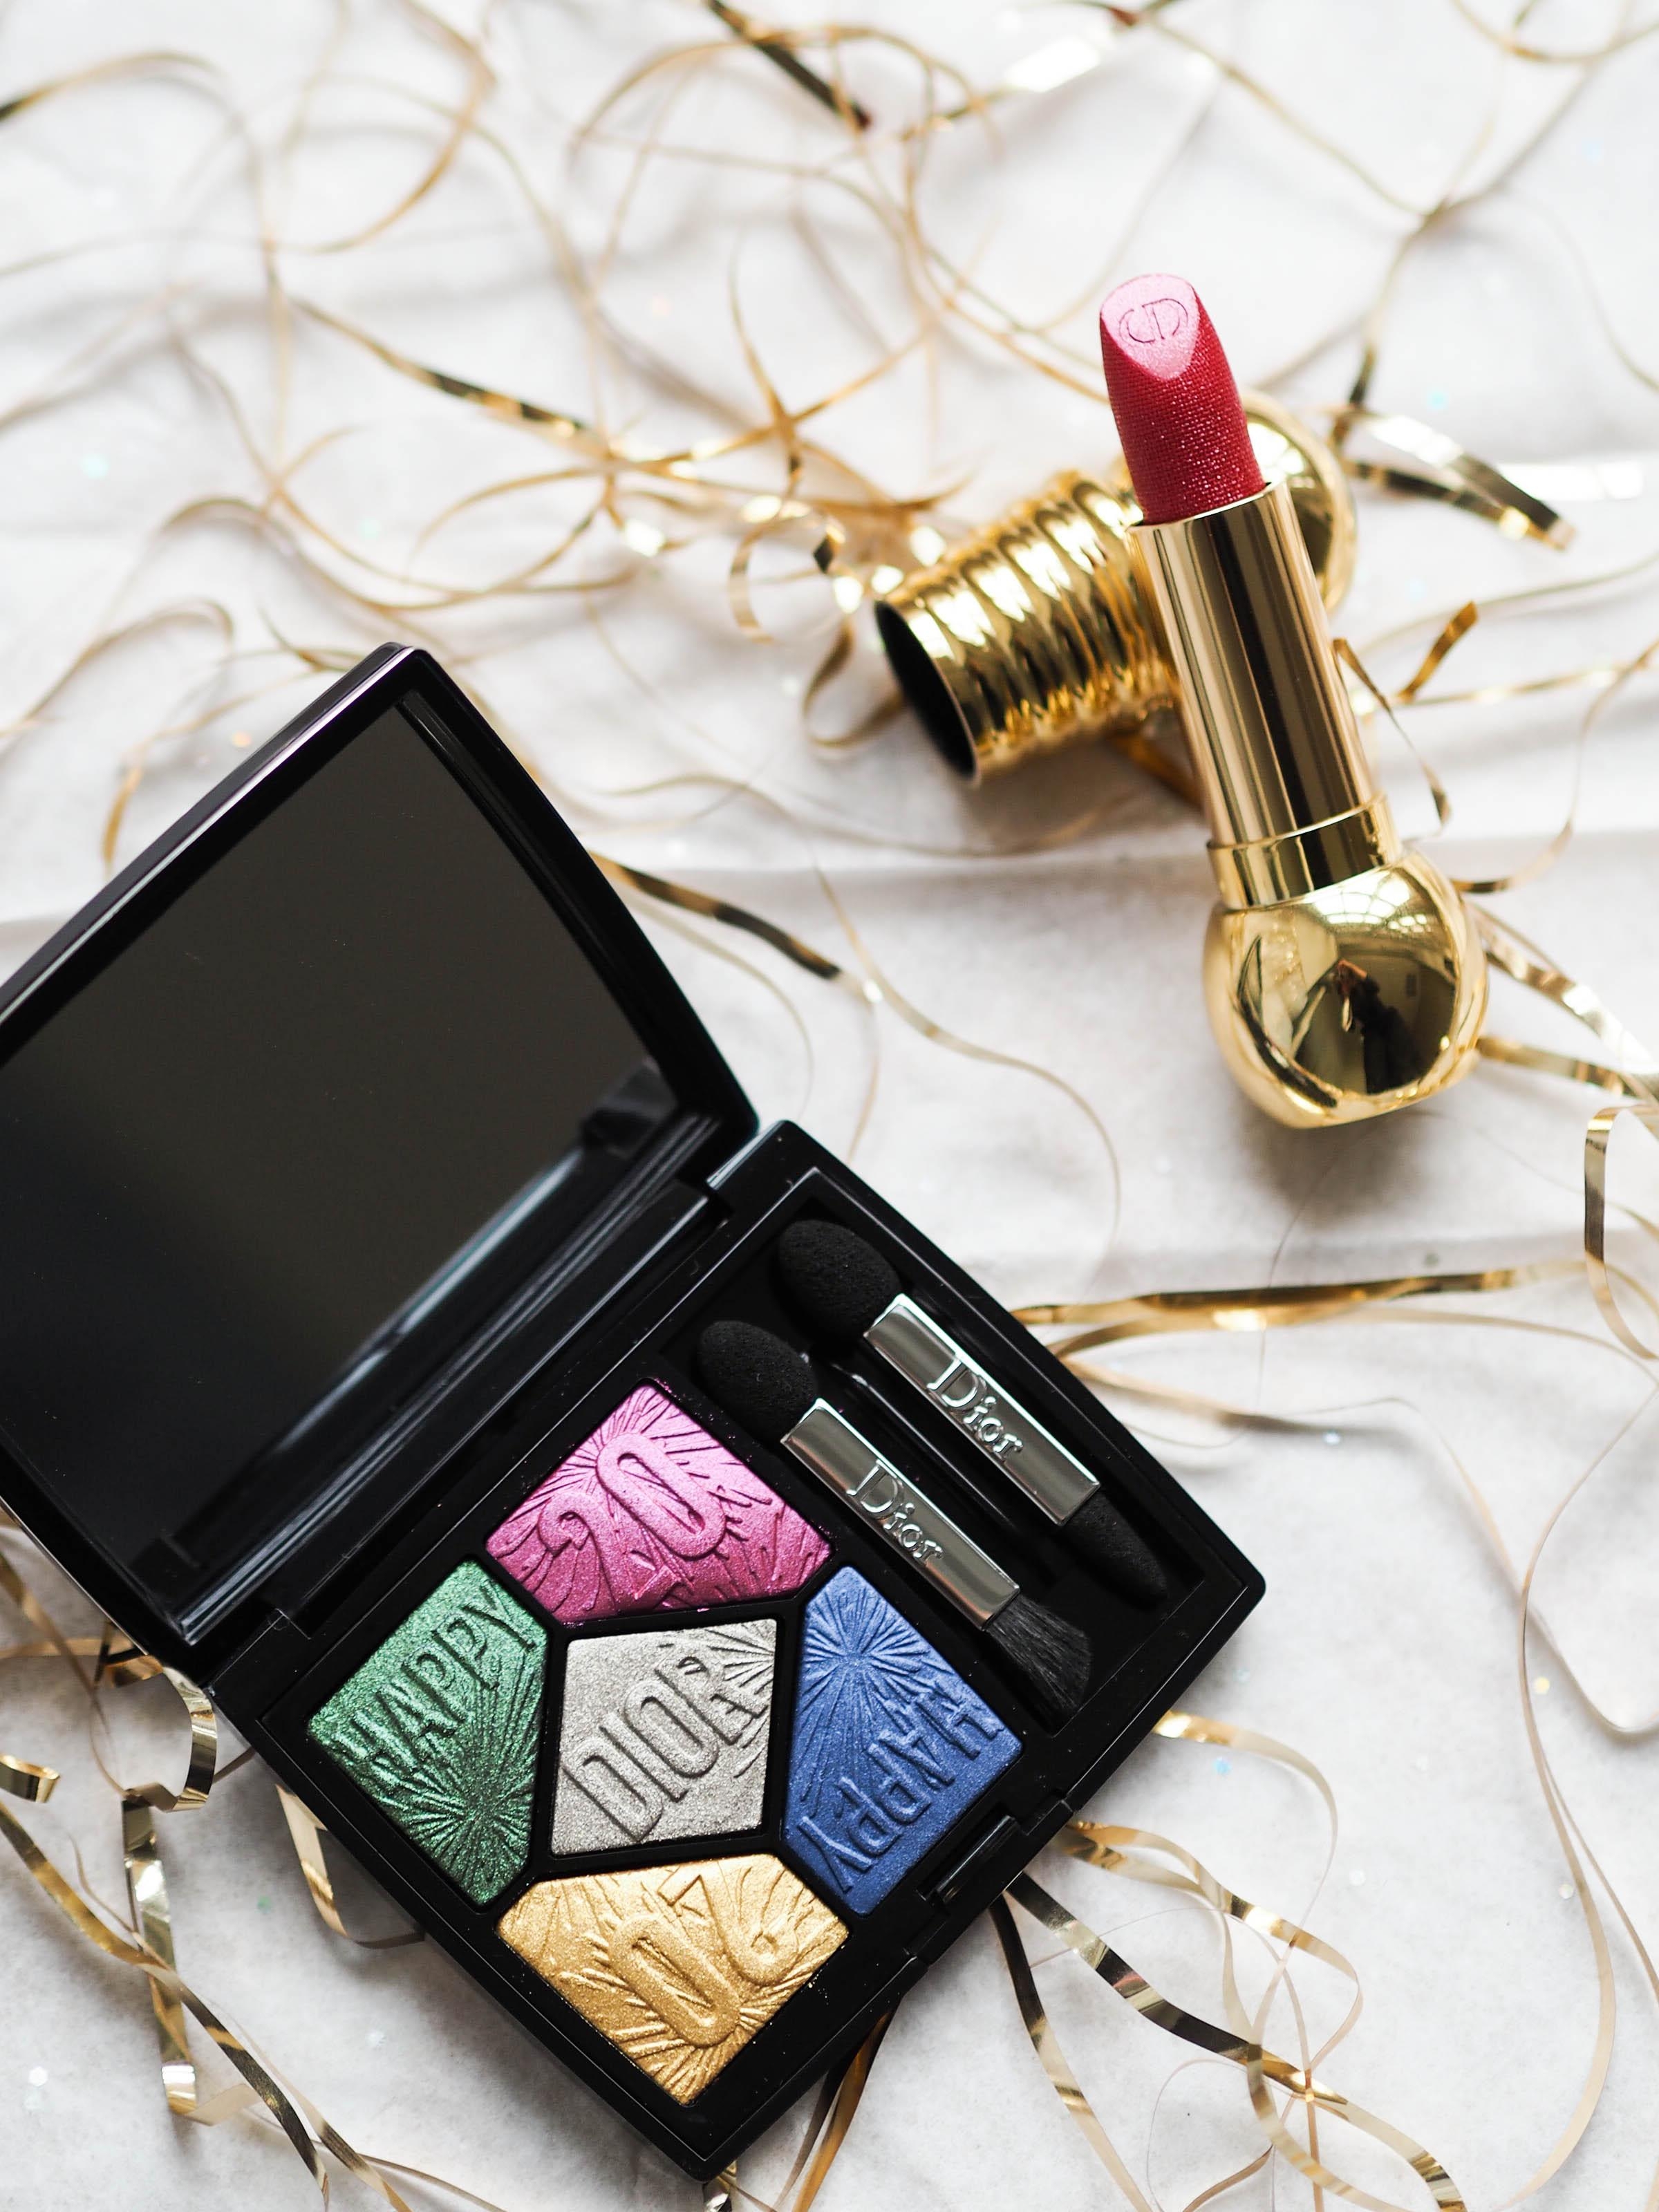 Silvester-Highlight? Mit knalligen Traum-Pieces von Dior gibt es garantiert ein frohes neues Jahr #beautylieblinge #dior